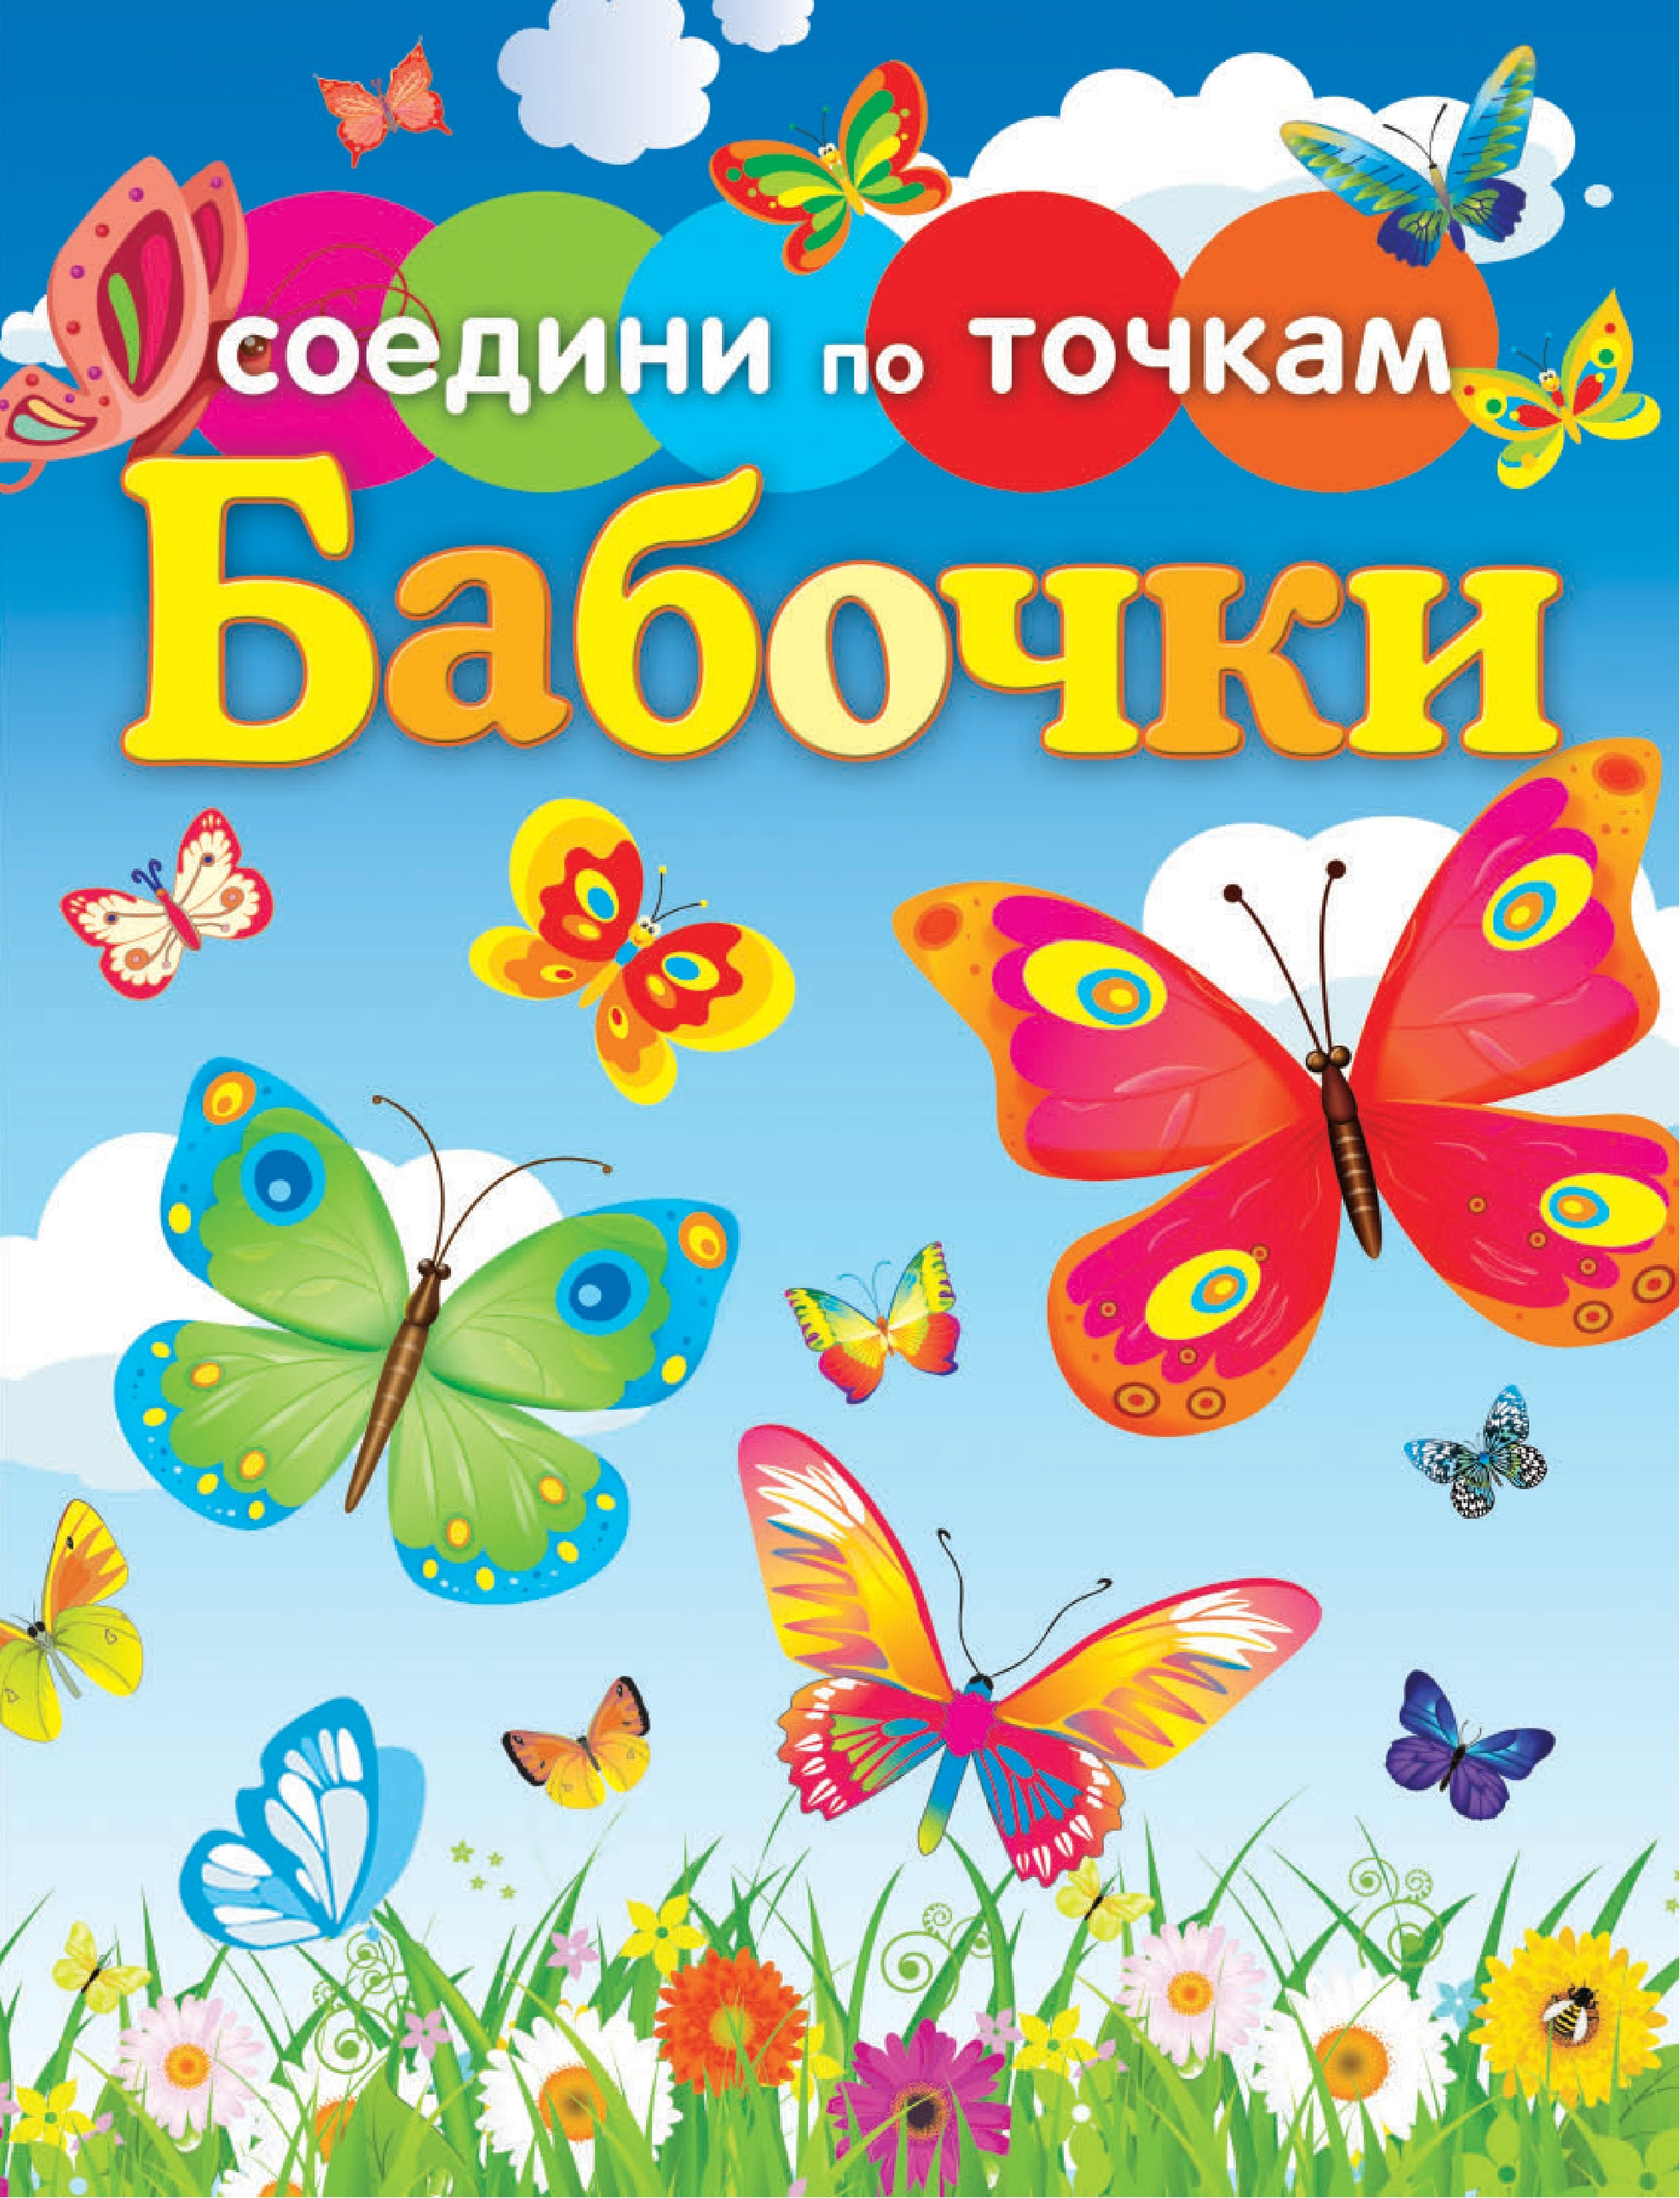 Бабочка обложка. Книга с бабочками. Детские книги про бабочек. Книги про бабочек для детей. Энциклопедия про бабочек для детей.